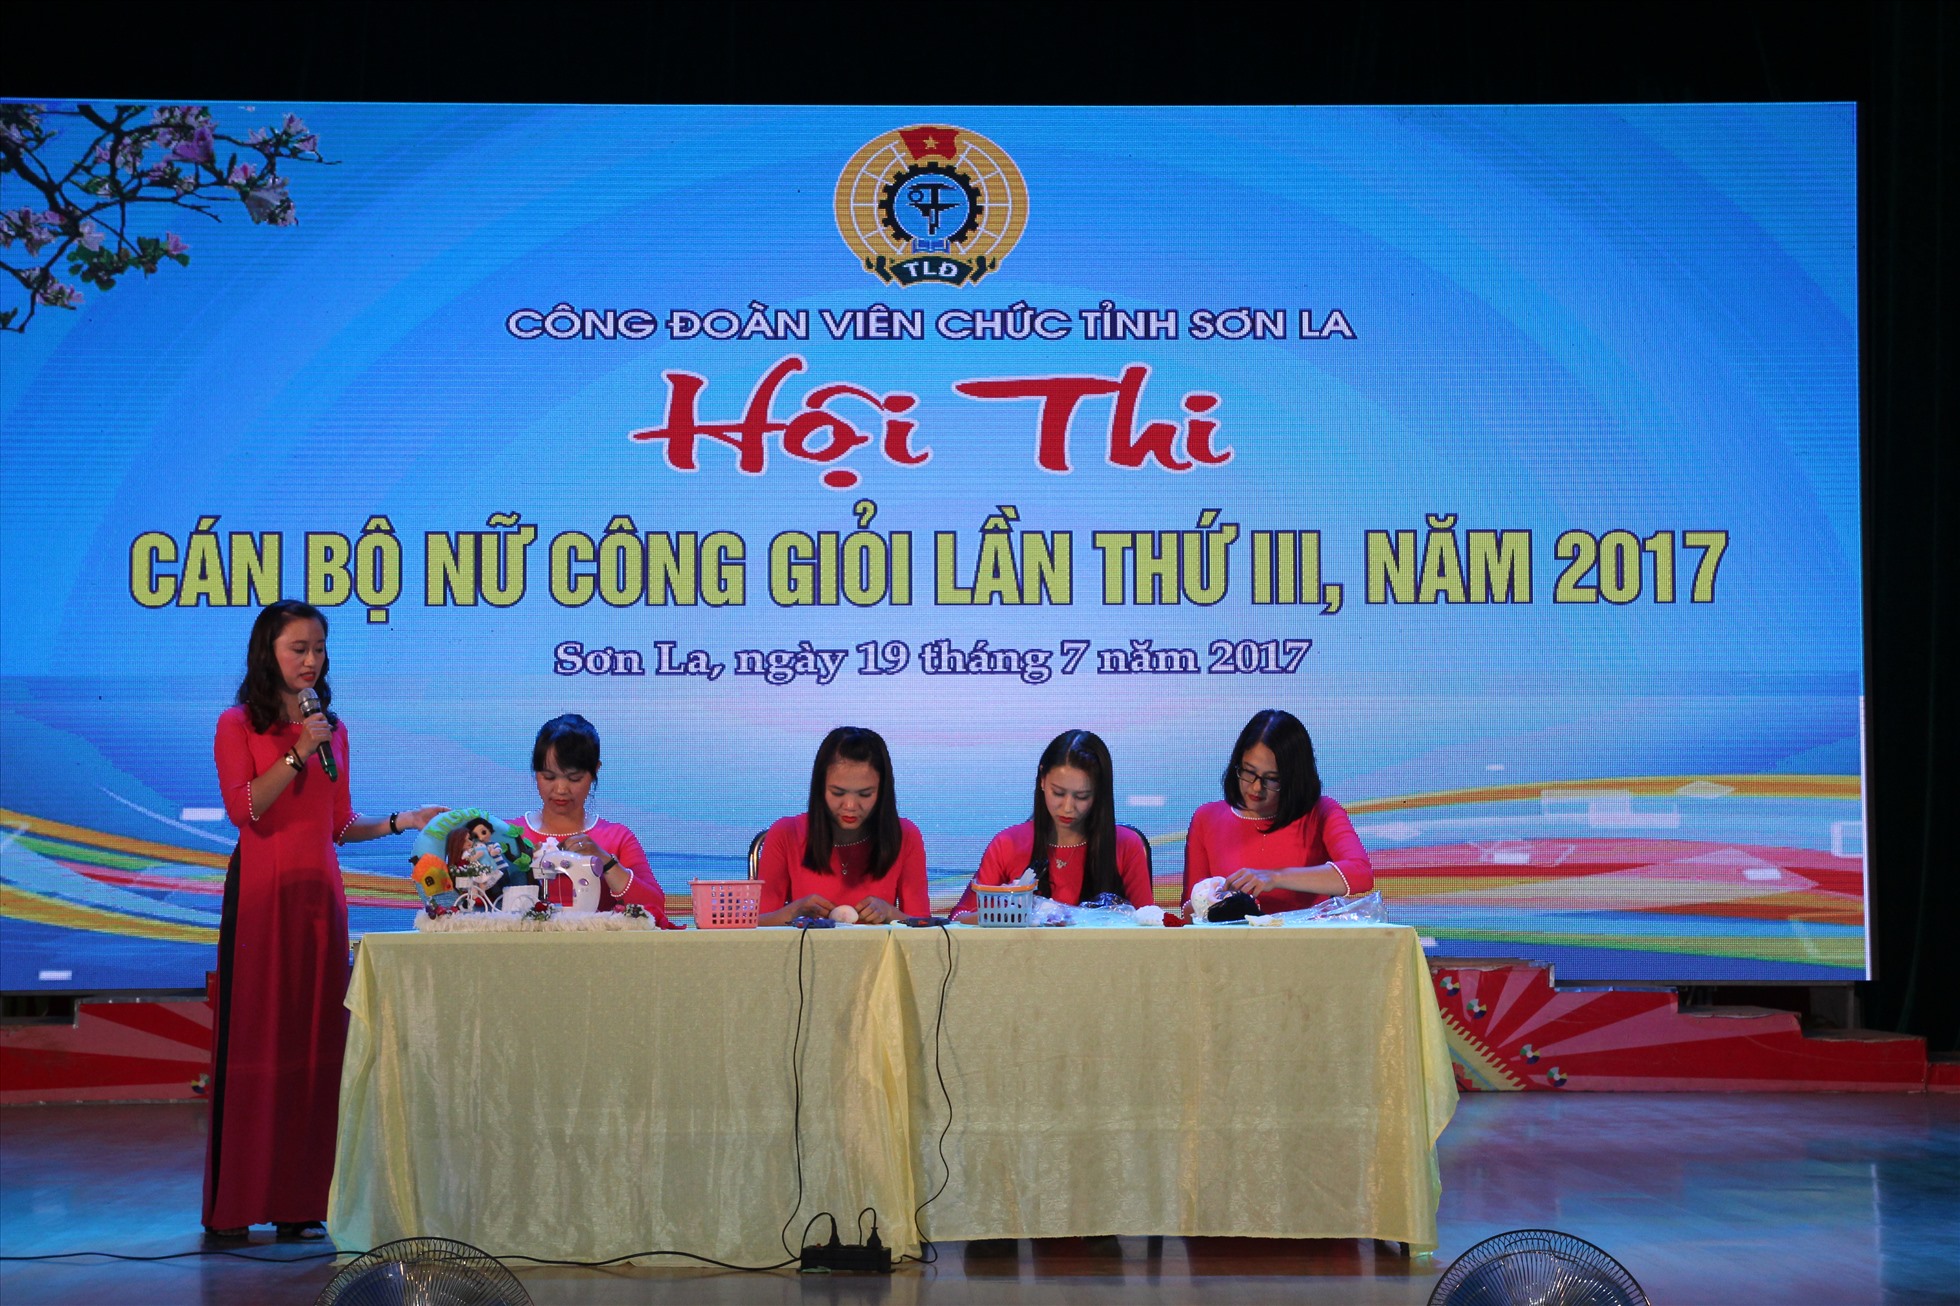 Hội thi Nữ công giỏi được Công đoàn viên chức tỉnh Sơn La tổ chức nhằm tạo sân chơi lành lạnh cho cán bộ, công chức, viên chức.